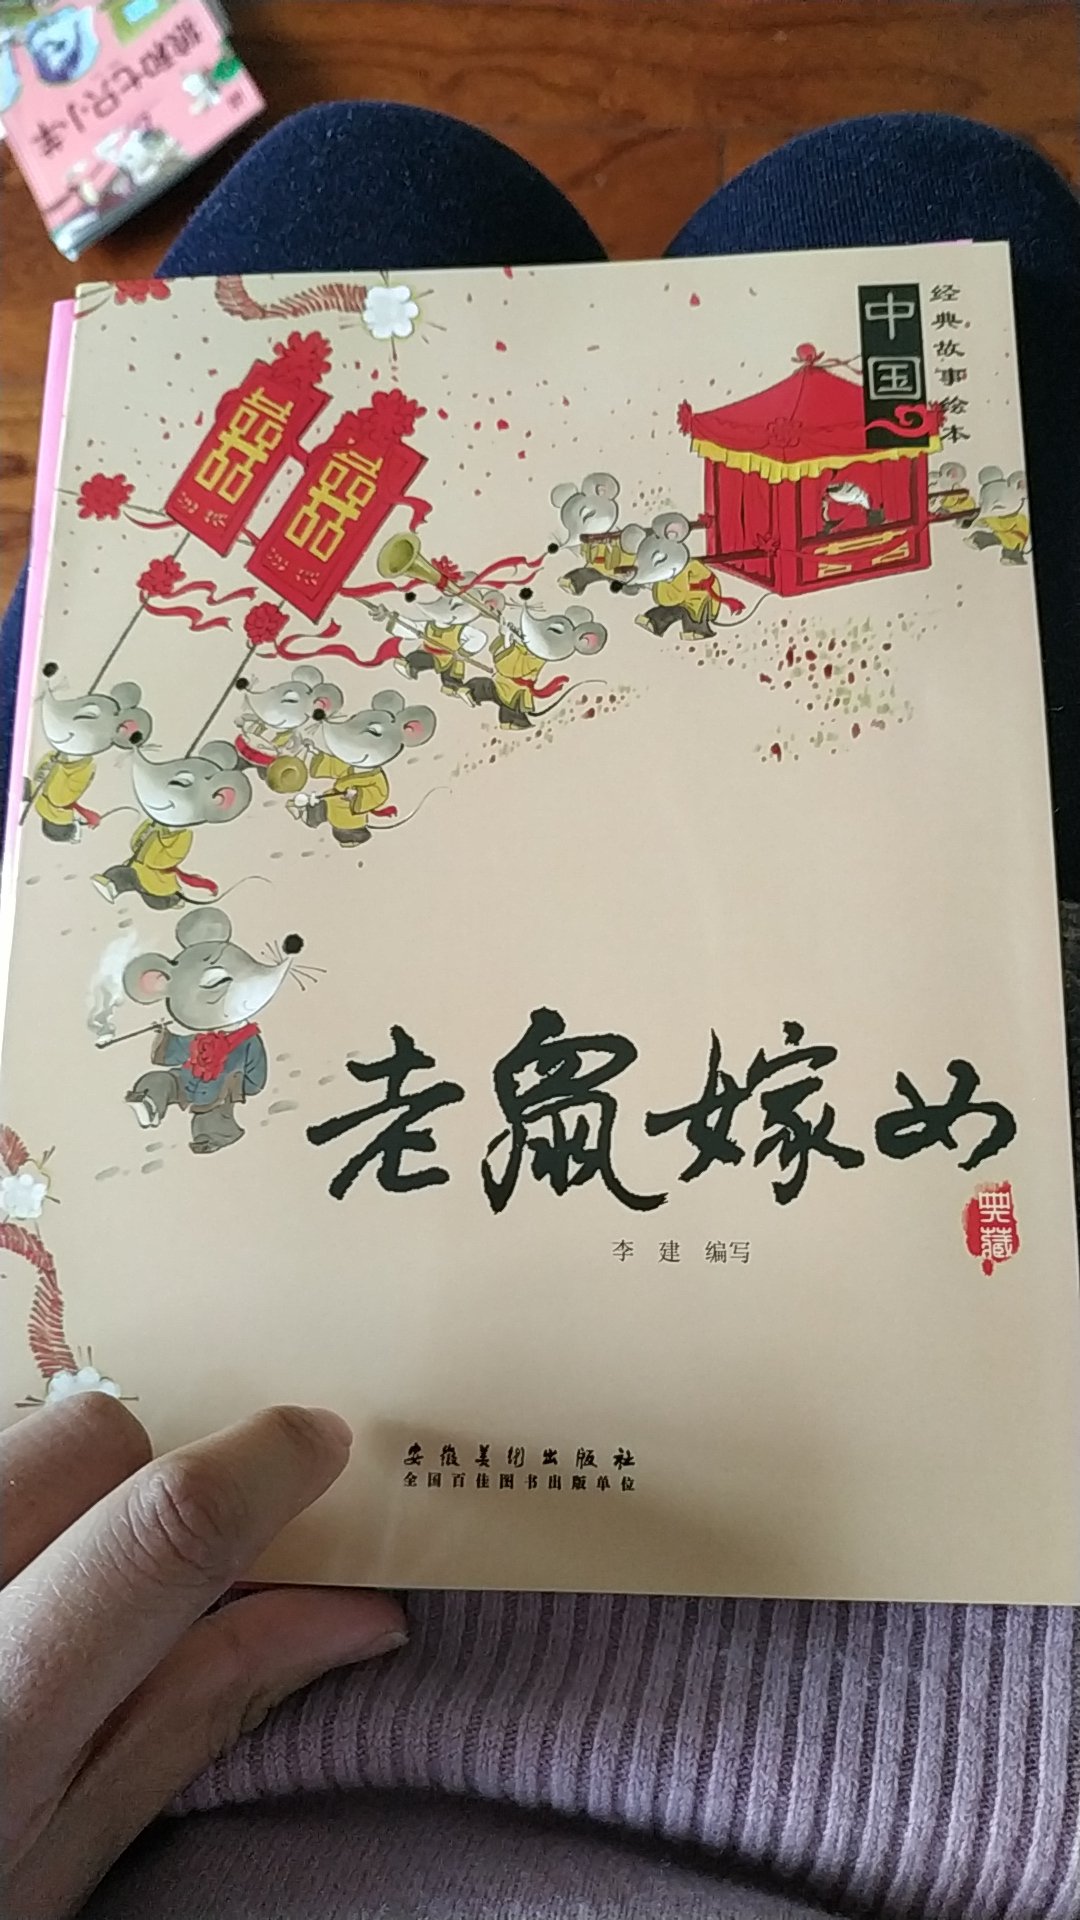 中国的古代故事，宝宝不太了解，买了这套书知道很多，纸箱和插画质感很好，很满意